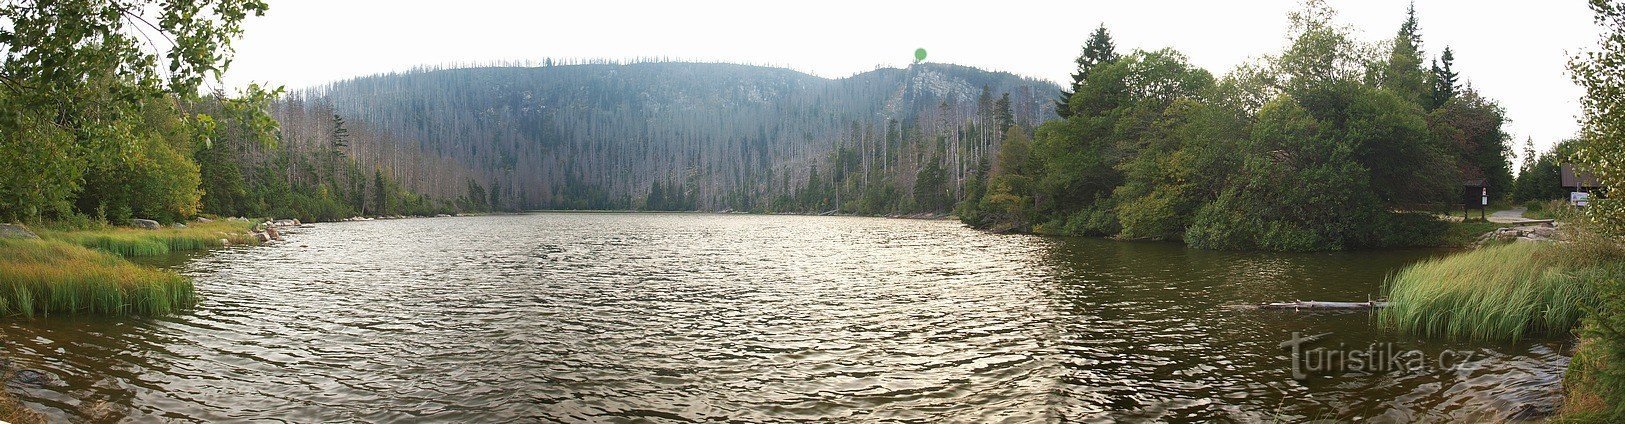 Lac chauve tiré de son barrage. Le point vert montre le point de vue avec la pierre obeli